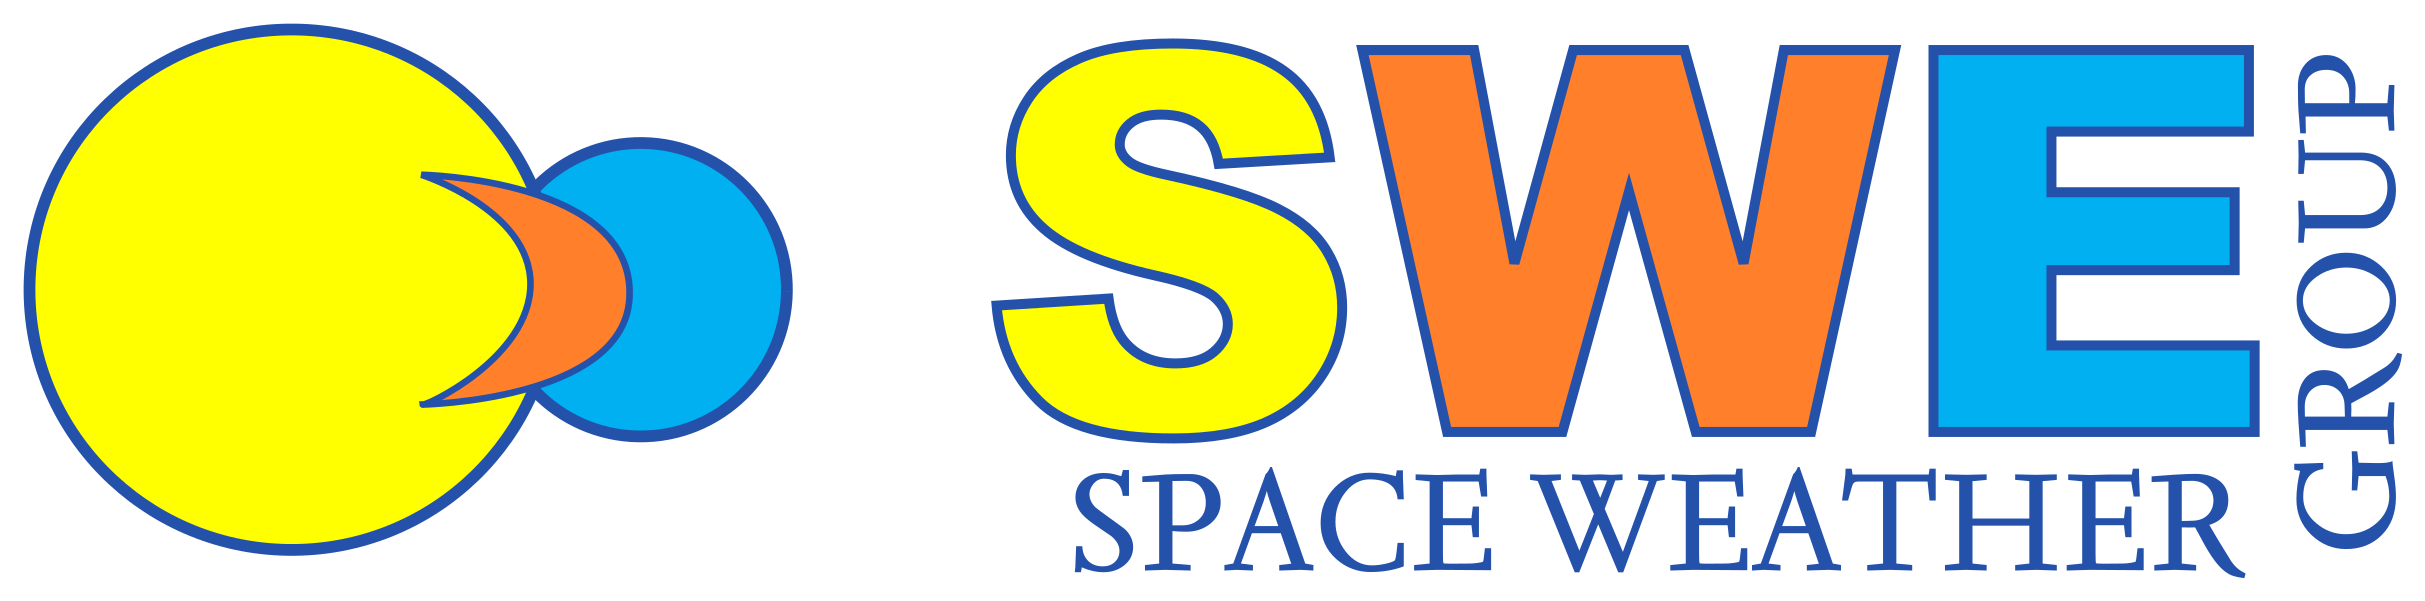 SWE_logo